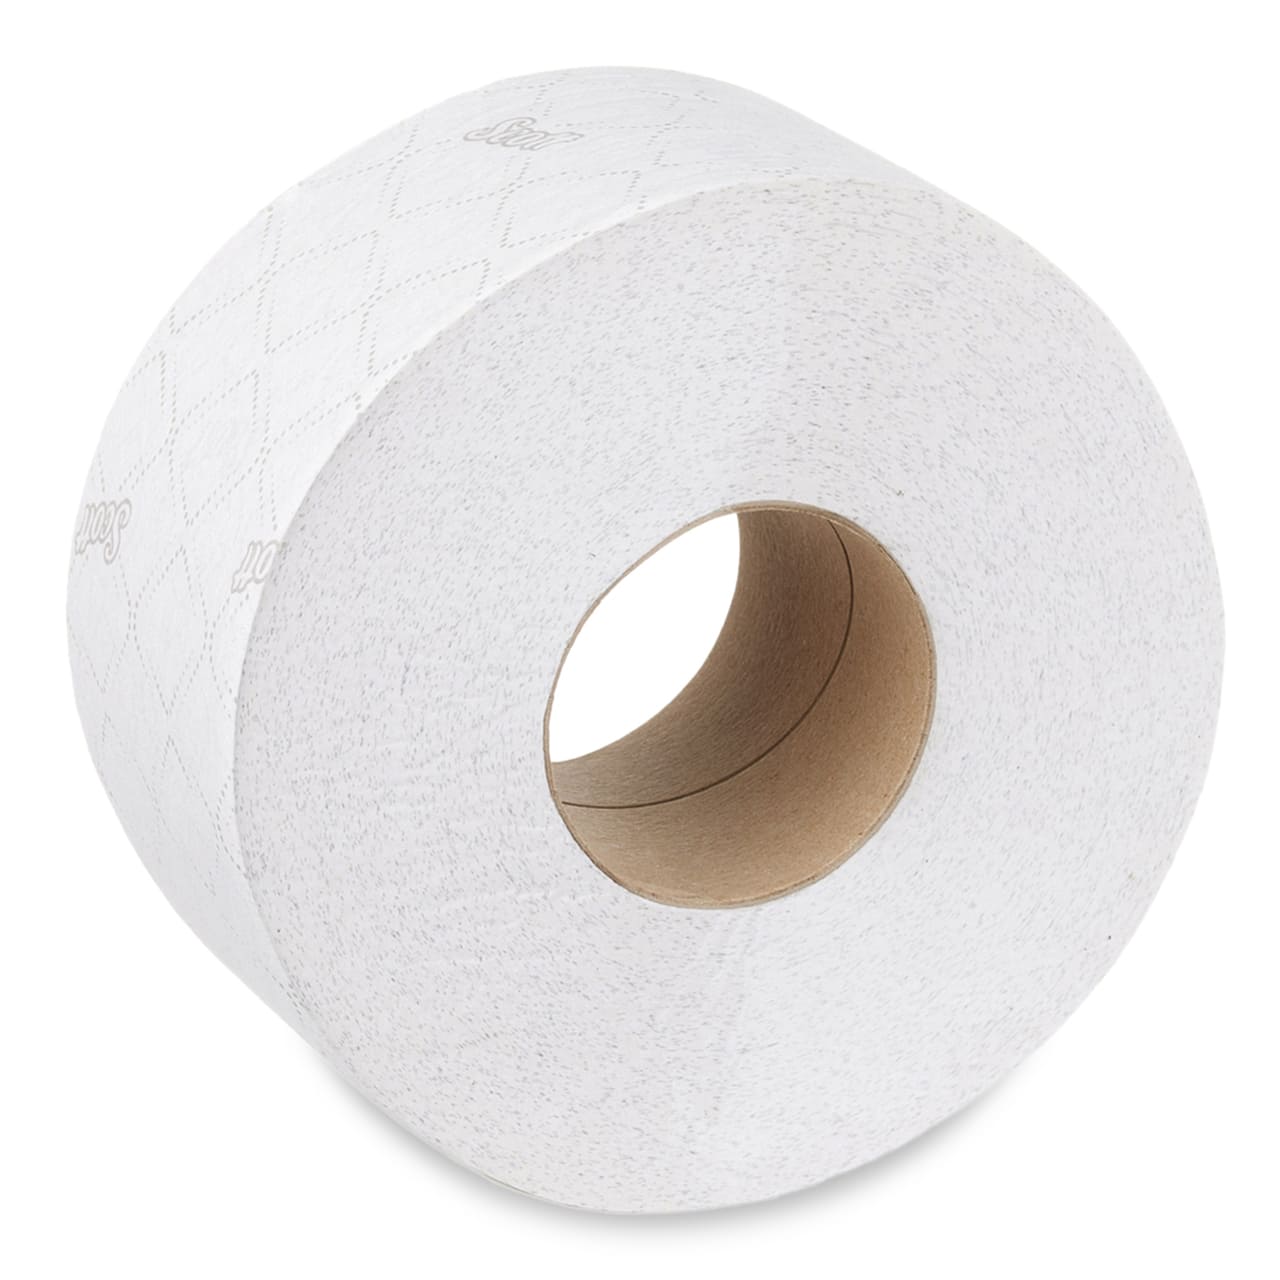 Scott® Essential™ Papier Toilette - Maxi Jumbo